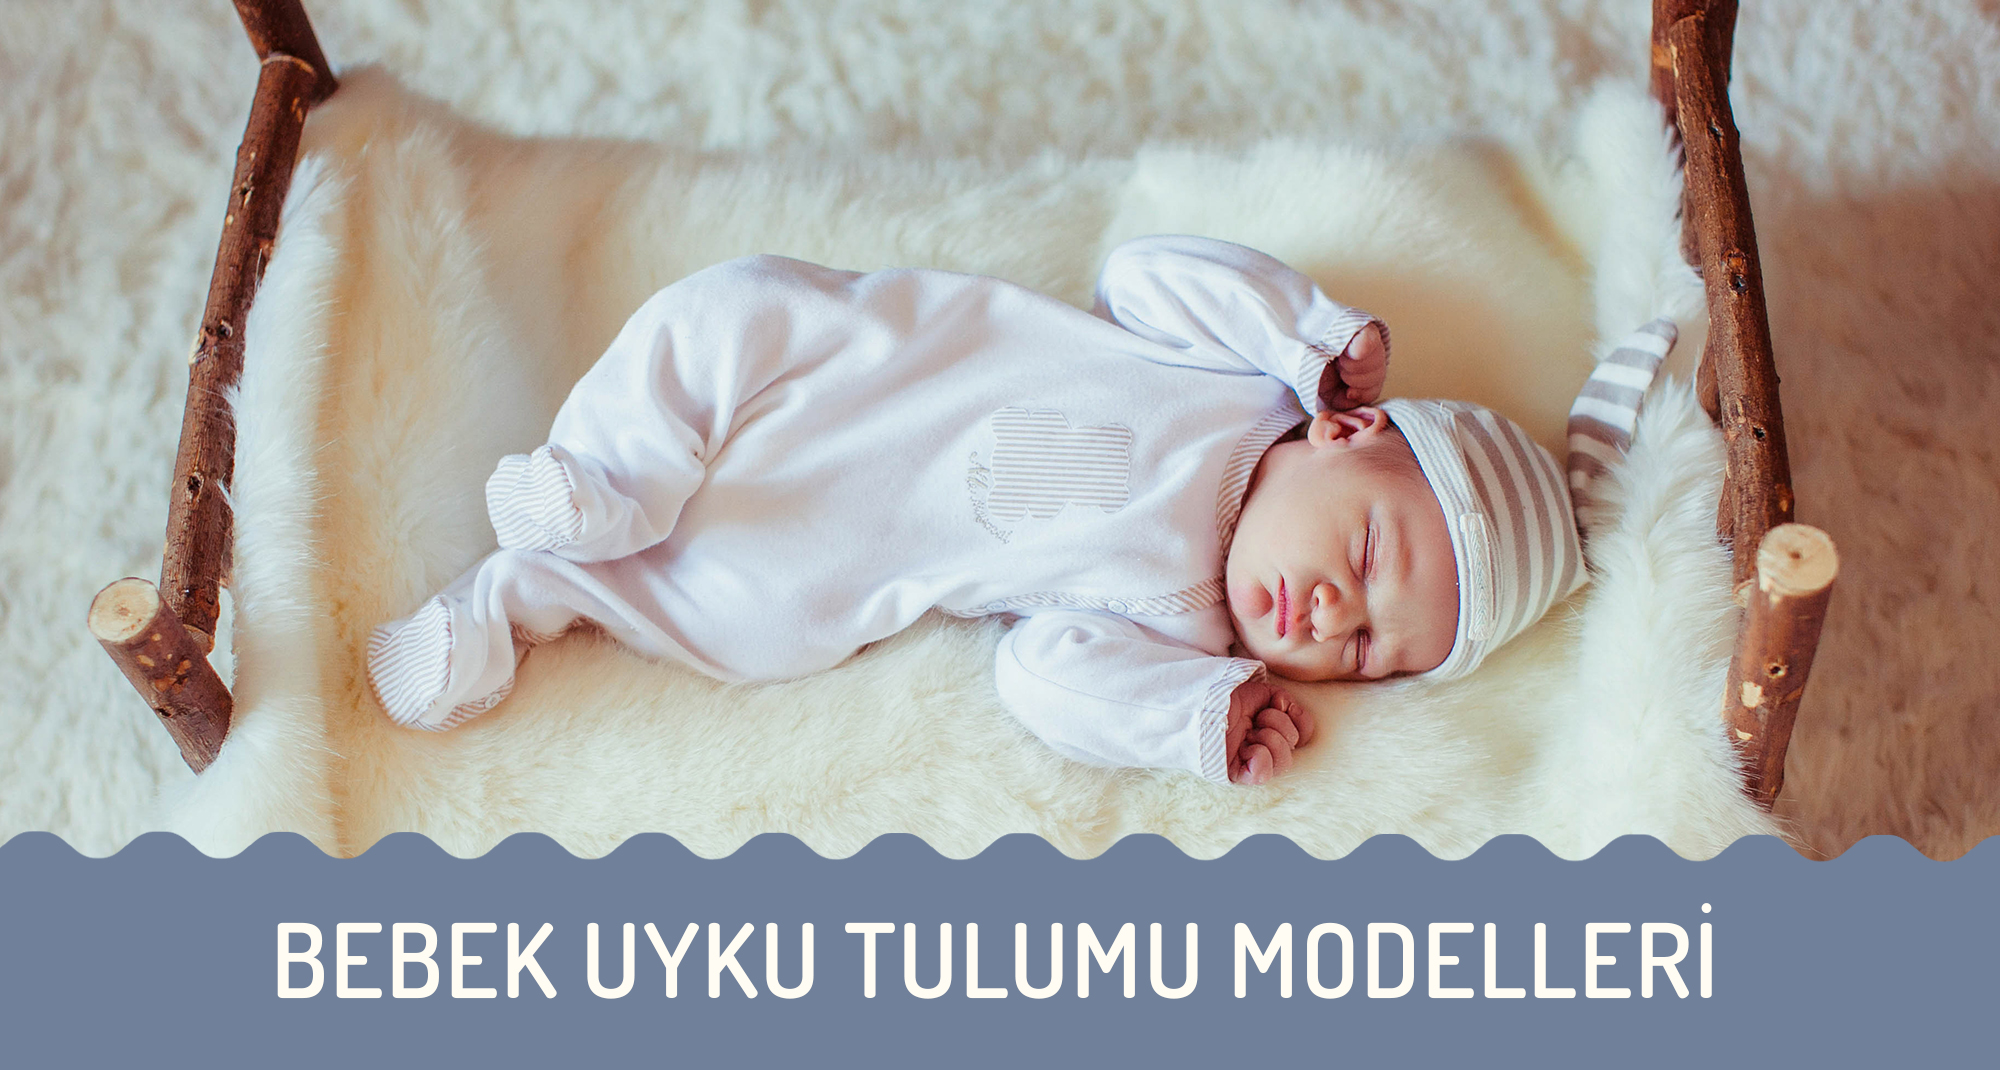 Bebek Uyku Tulumu Modelleri - Bebek Uyku Tulumu Nasıl Seçilir?